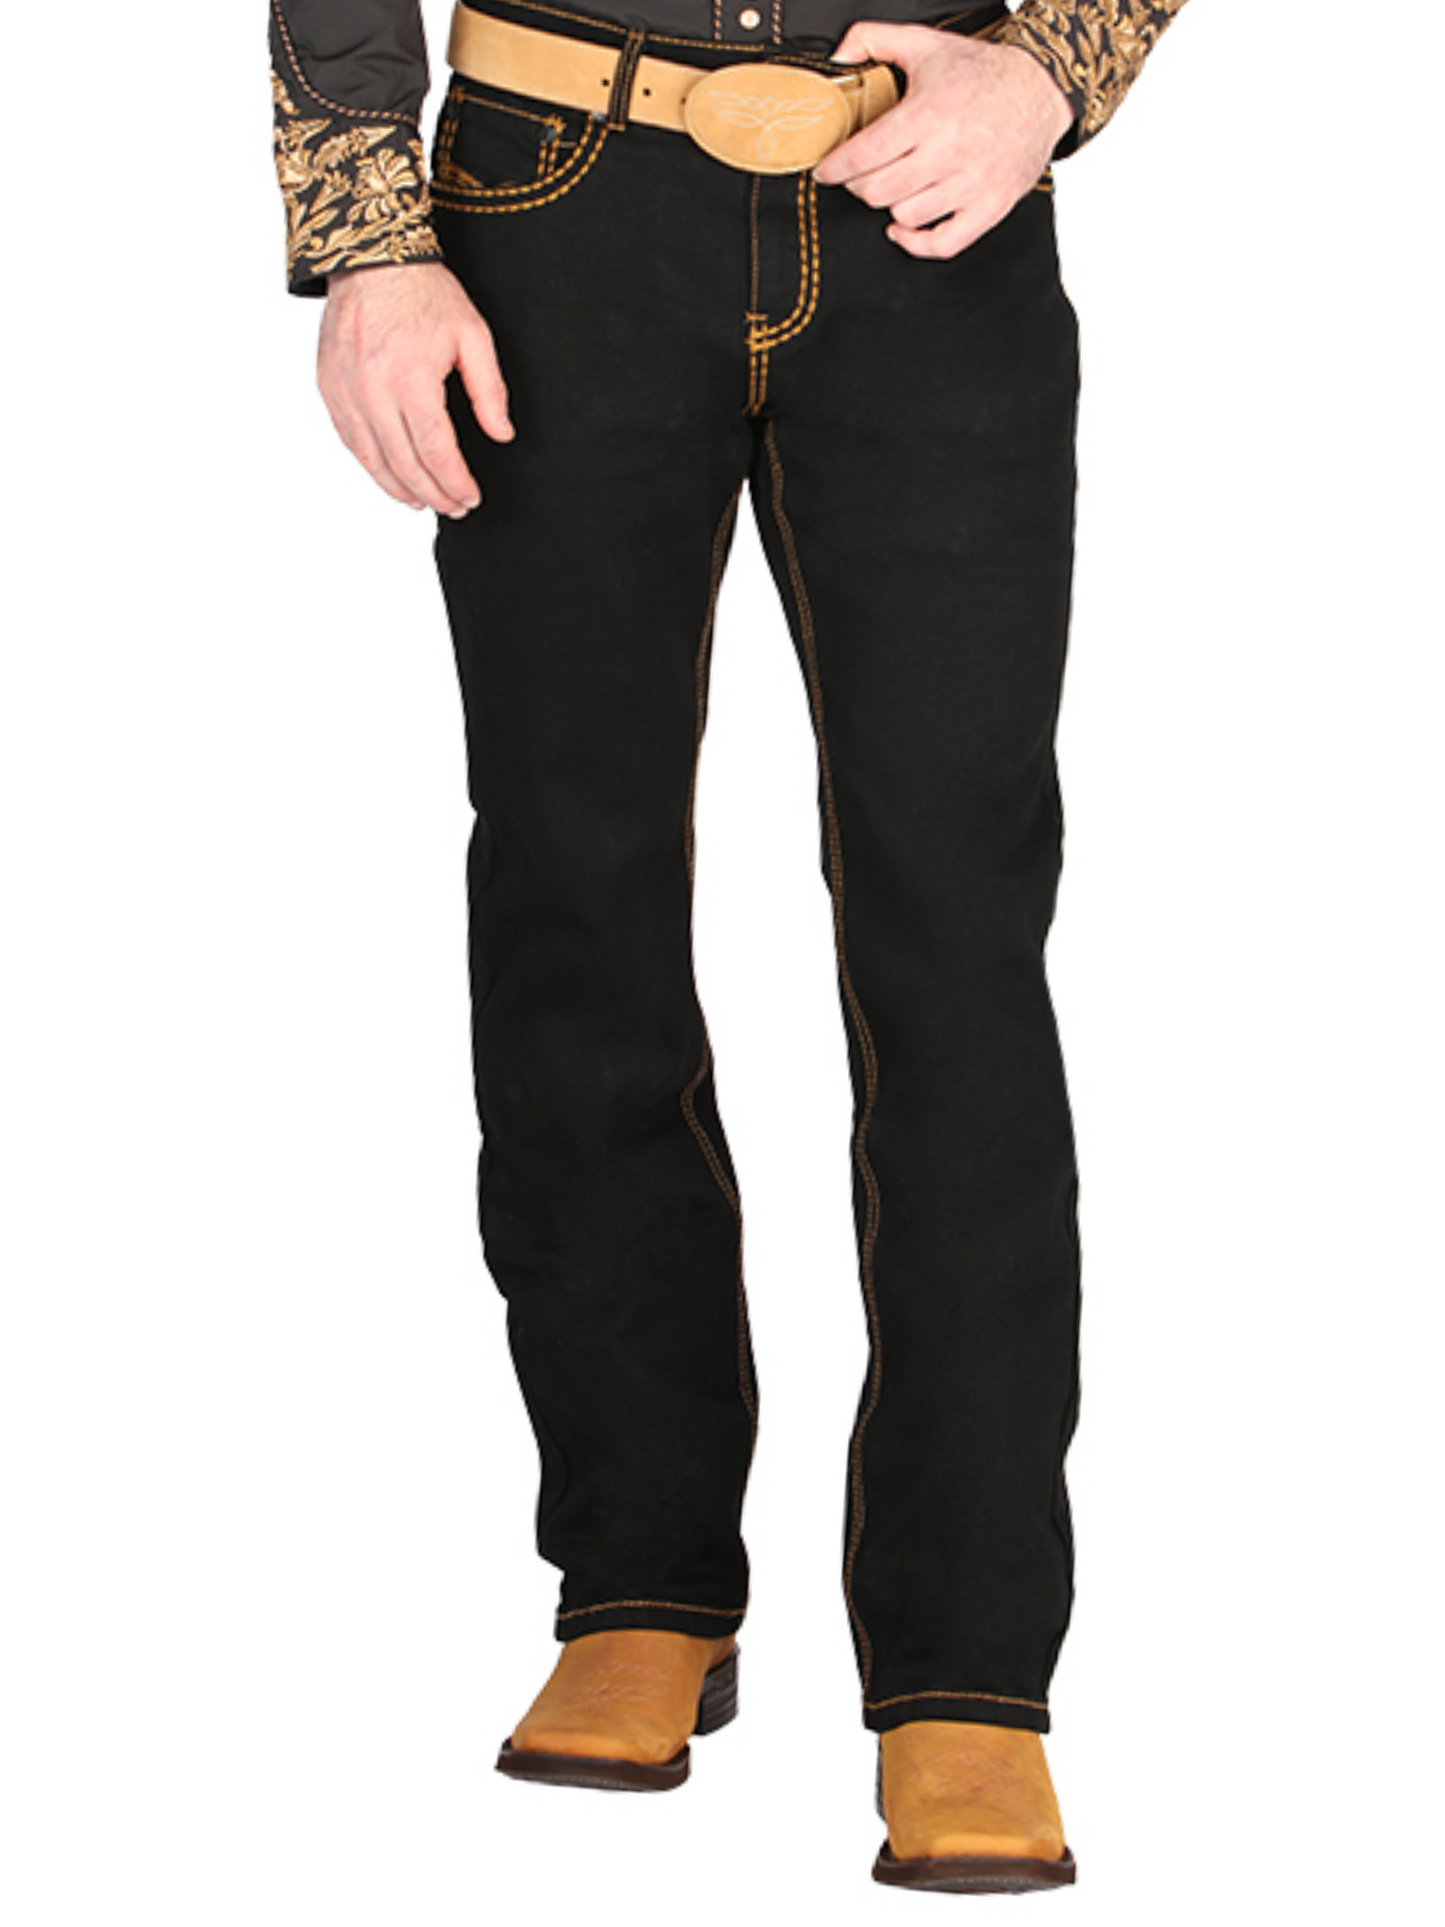 Black Boot Cut Denim Jeans for Men 'Centenario' - ID: 44843 Denim Jeans Centenario